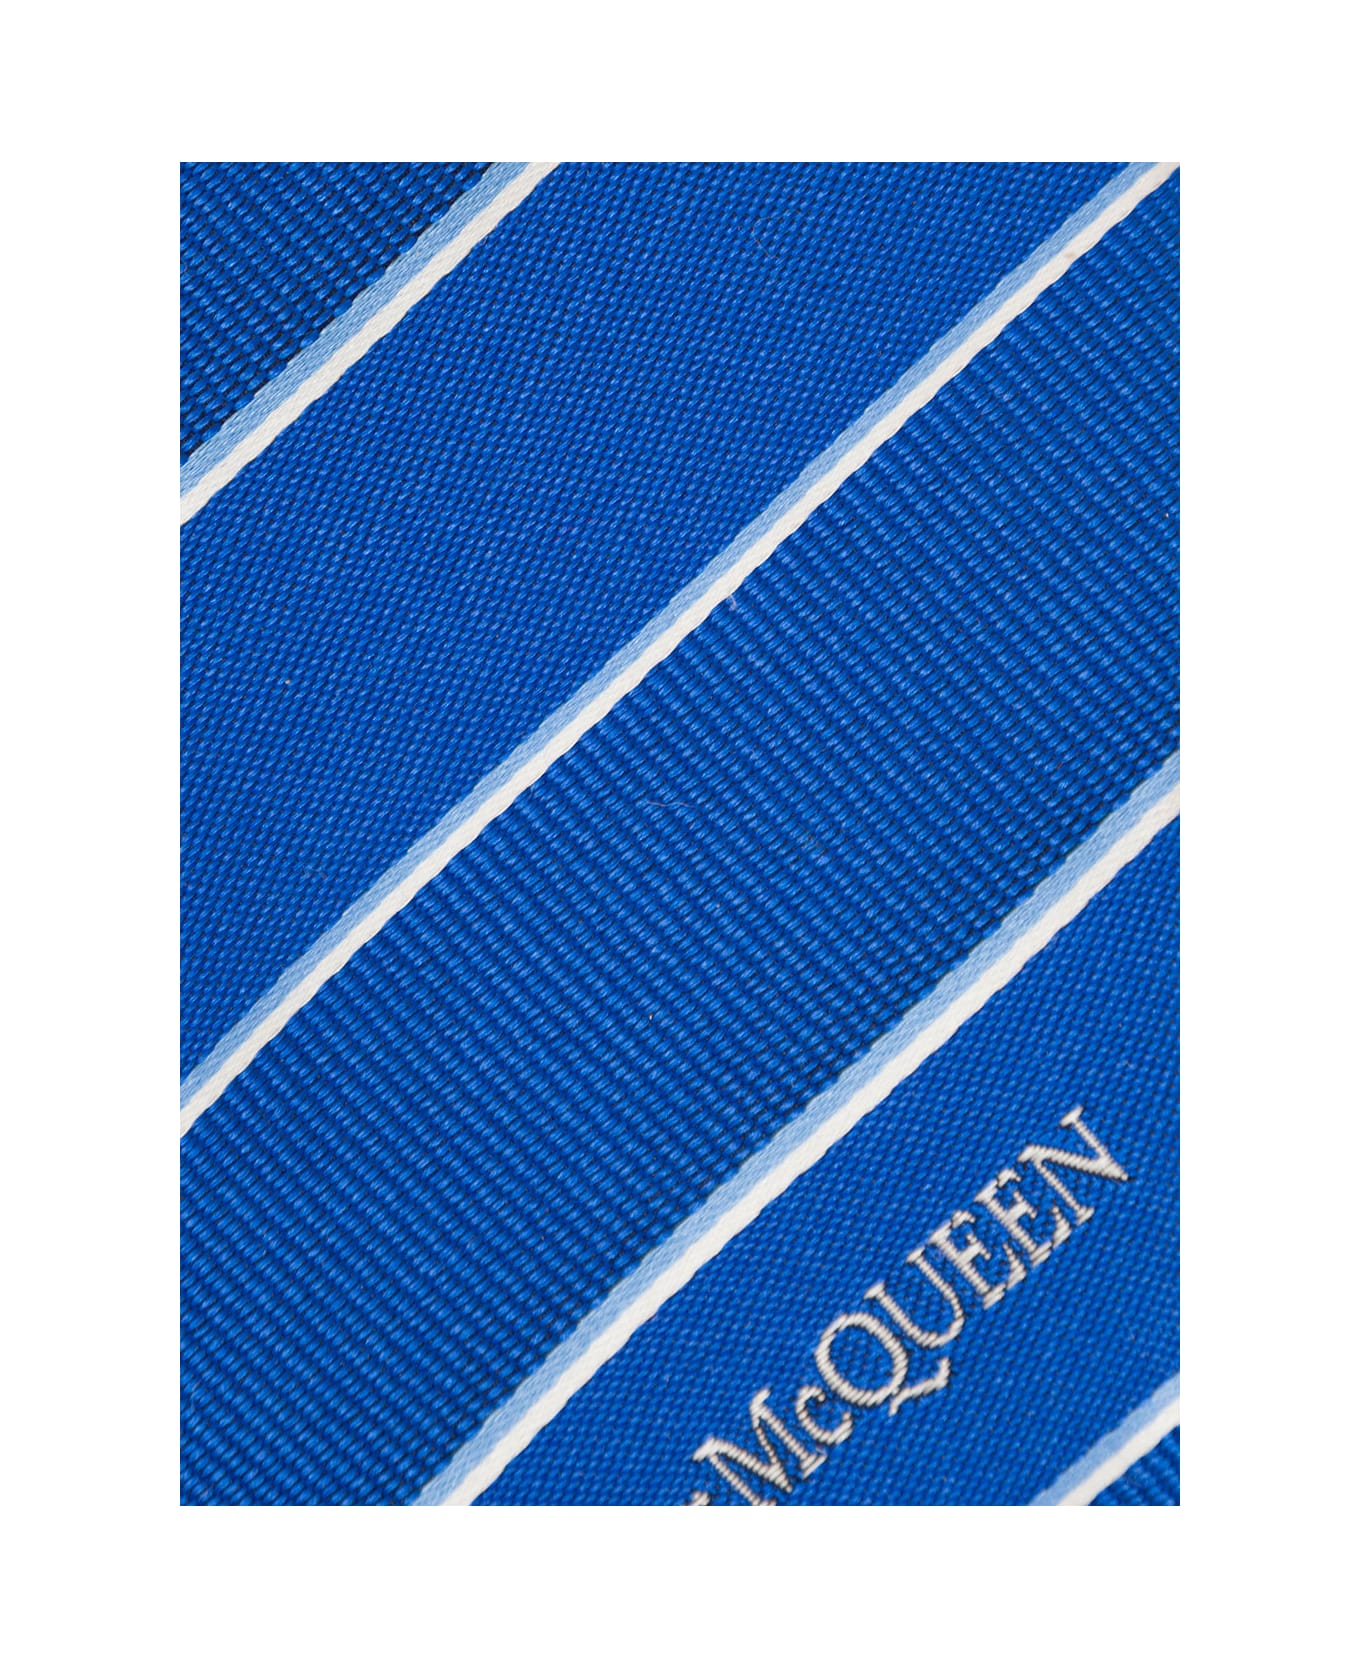 Alexander McQueen Man's Striped Blue Silk Tie - Blu